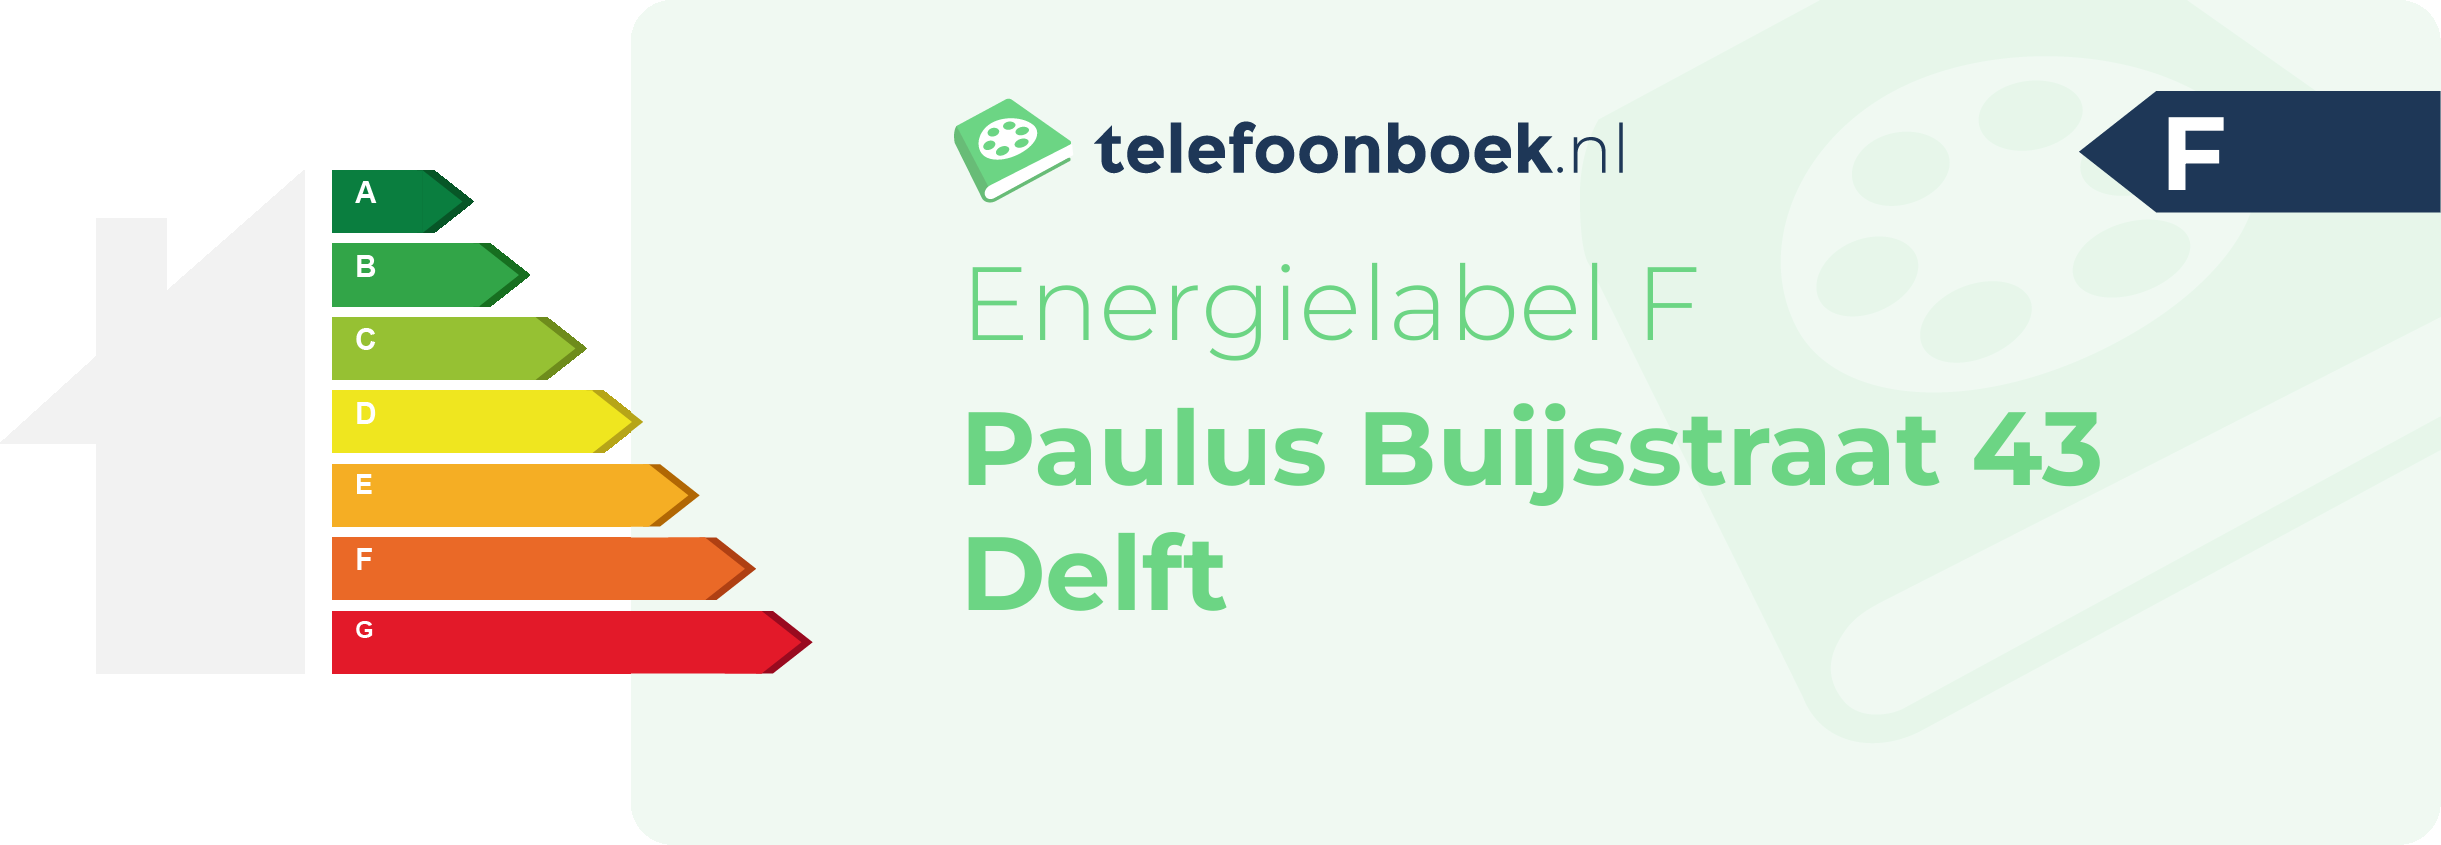 Energielabel Paulus Buijsstraat 43 Delft